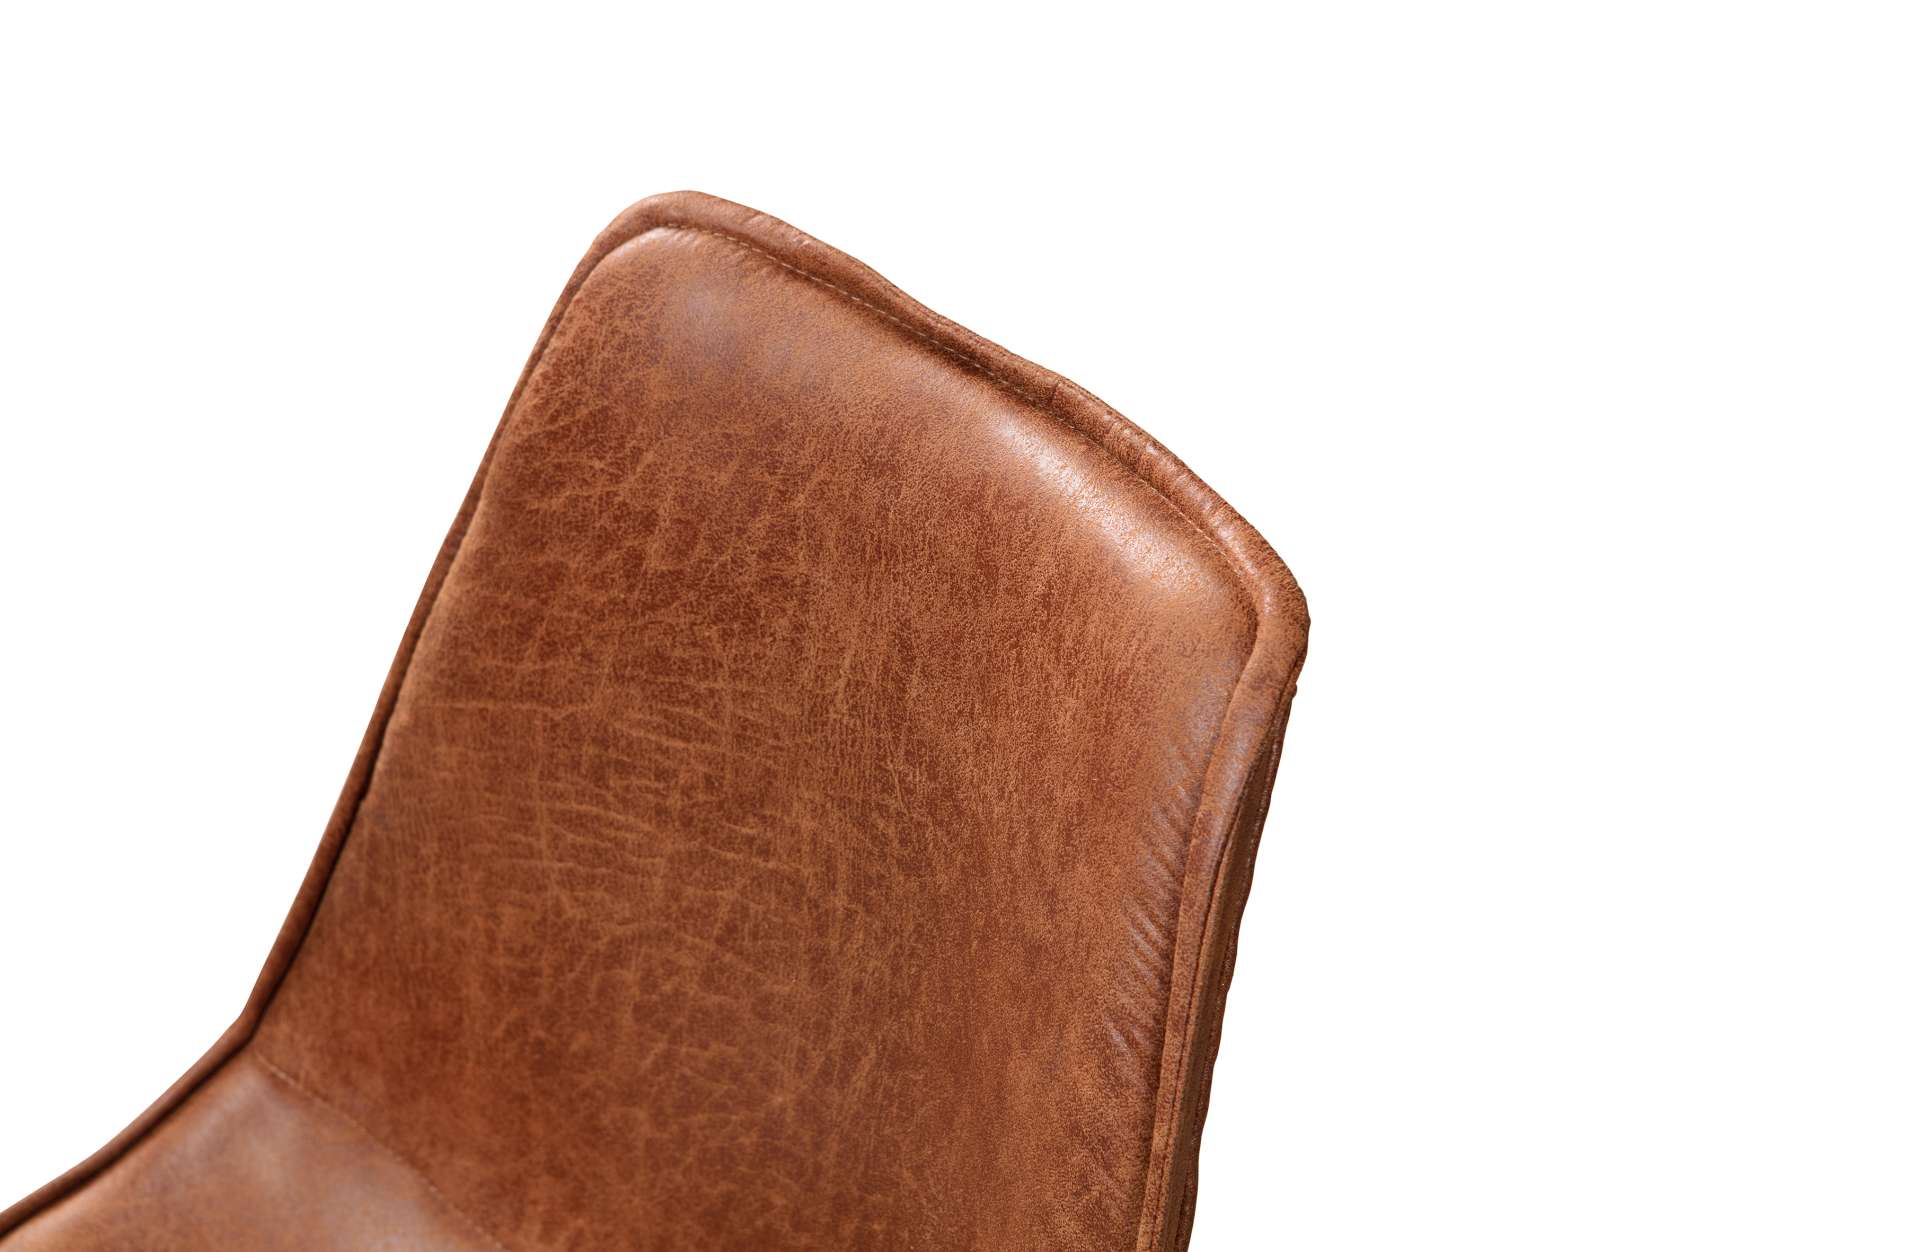 Der Esszimmerstuhl Swen wurde Leder gefertigt, welches eine Cognac Farbton besitzt. Das Gestell ist aus Metall und ist in einem schwarzen Farbton. Der Stuhl ist in zwei Varianten verfügbar.